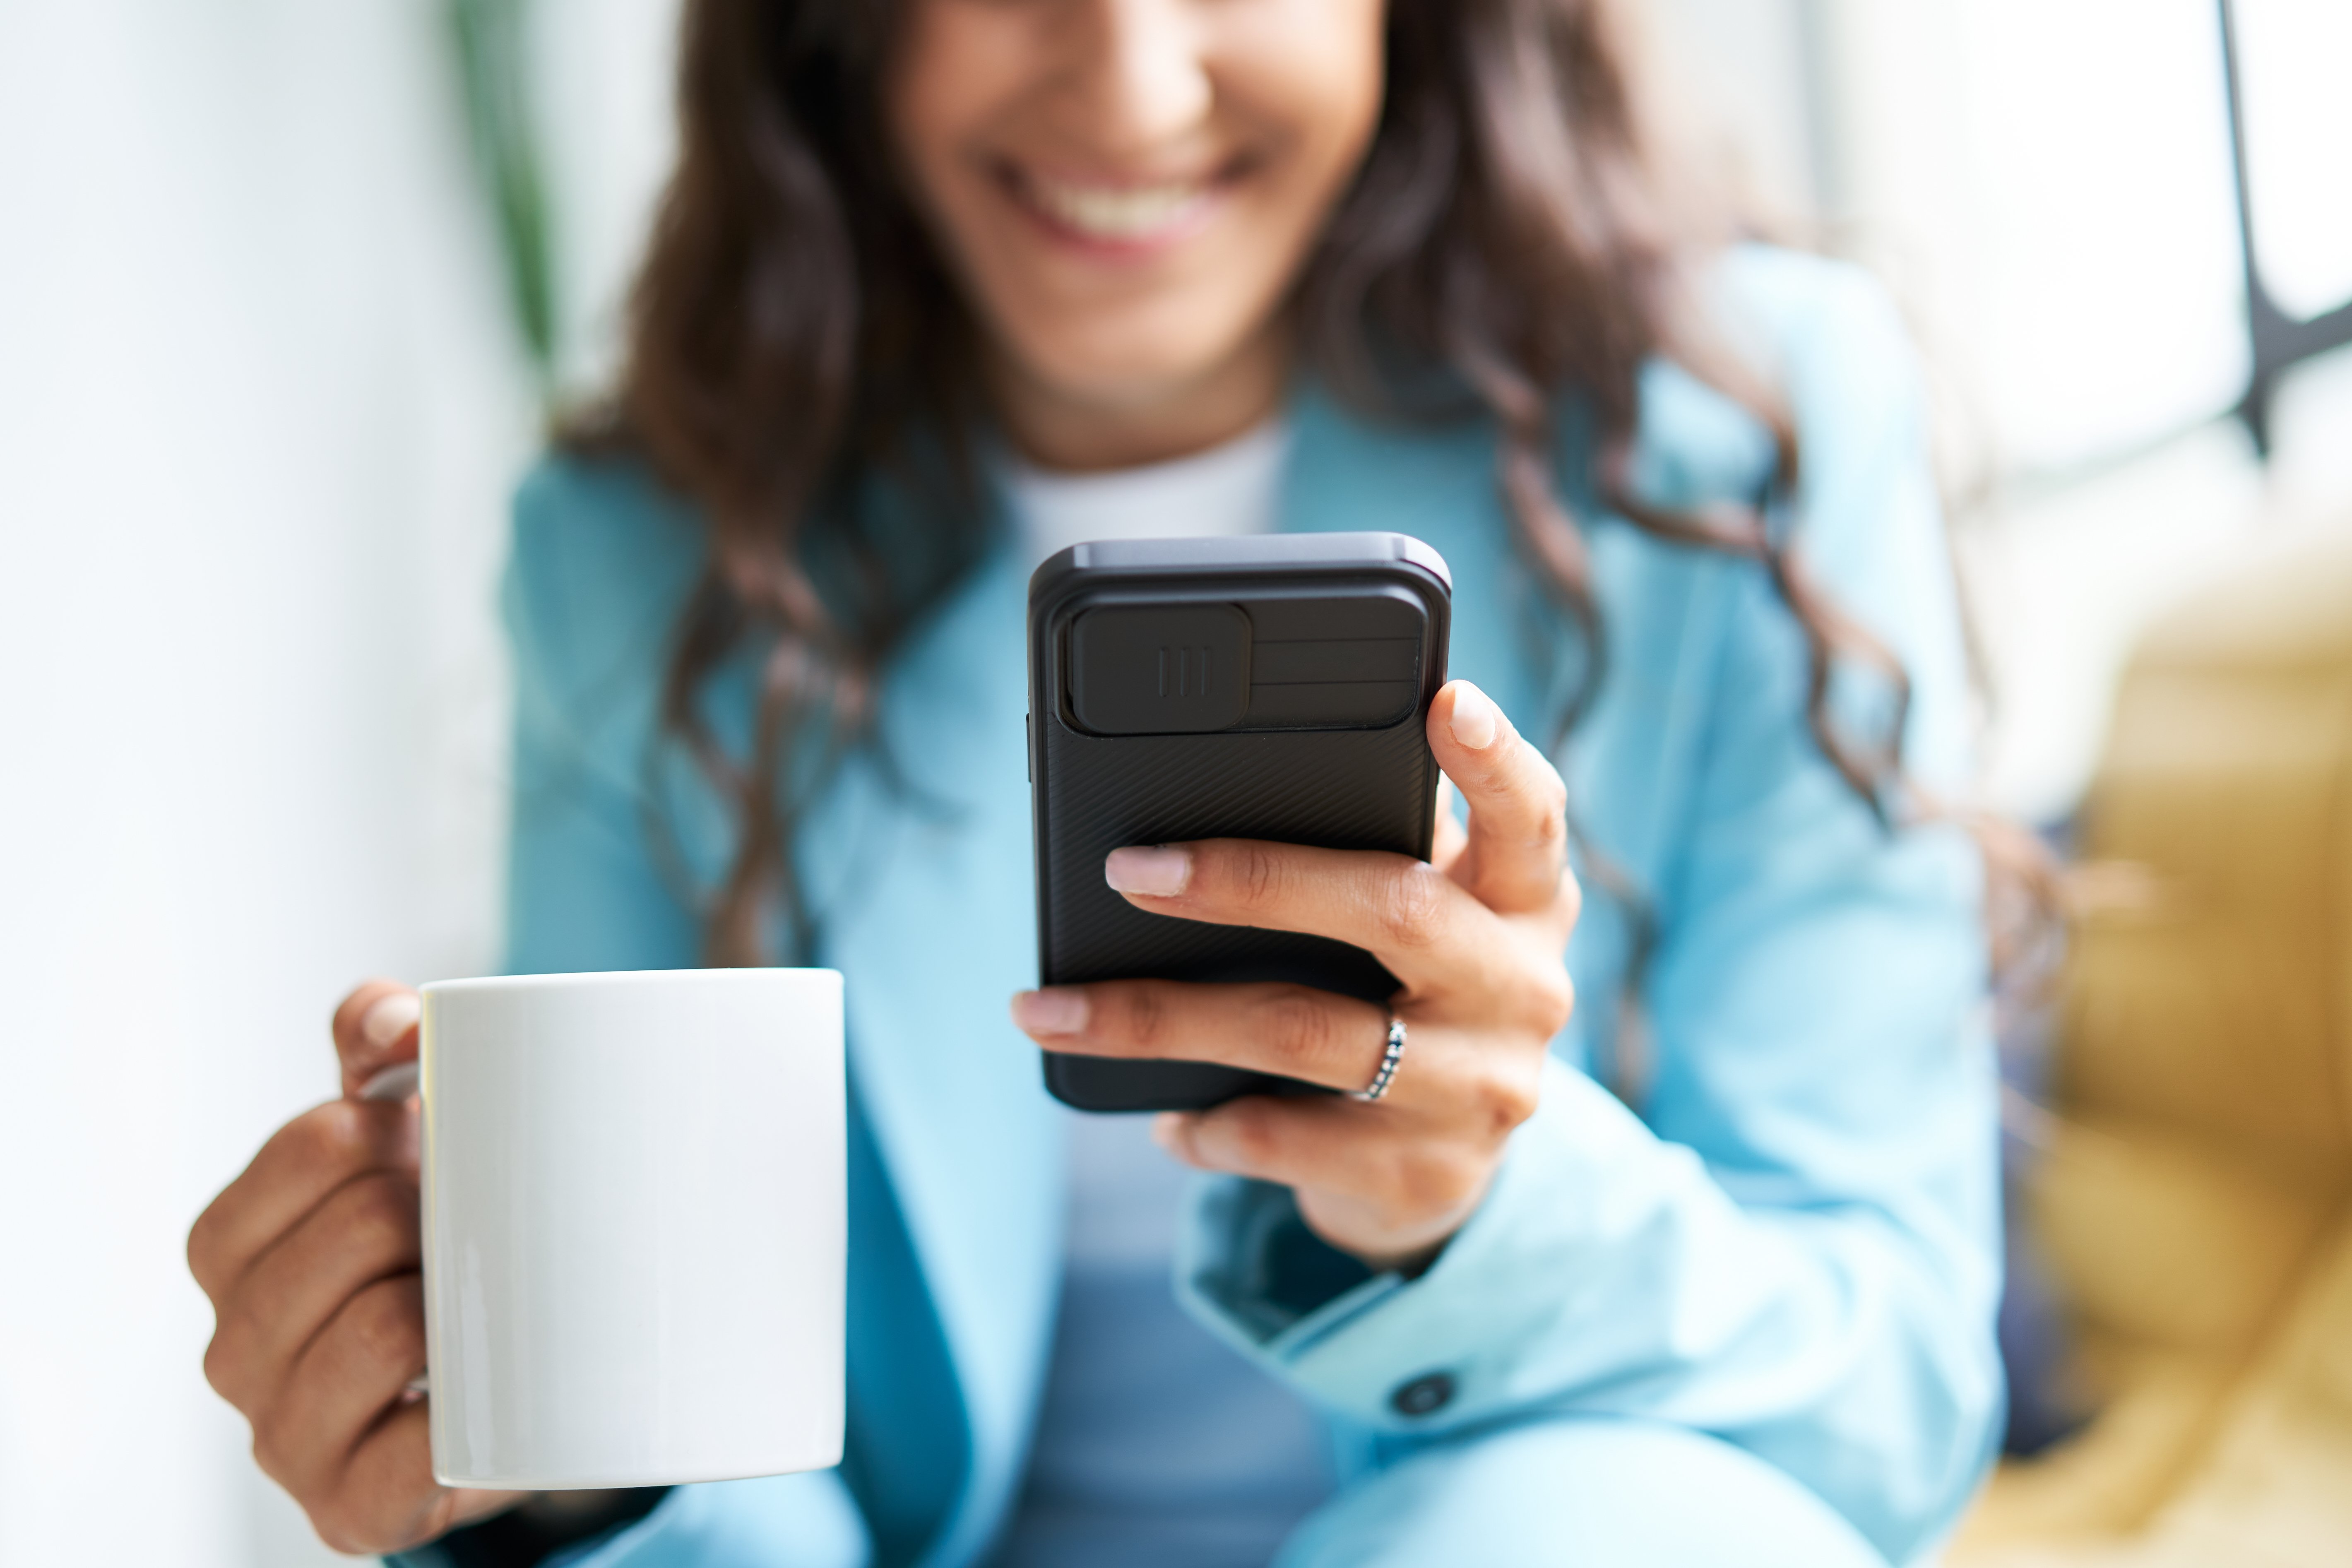 Mujer sonriendo y viendo su teléfono móvil. | Foto: Shutterstock